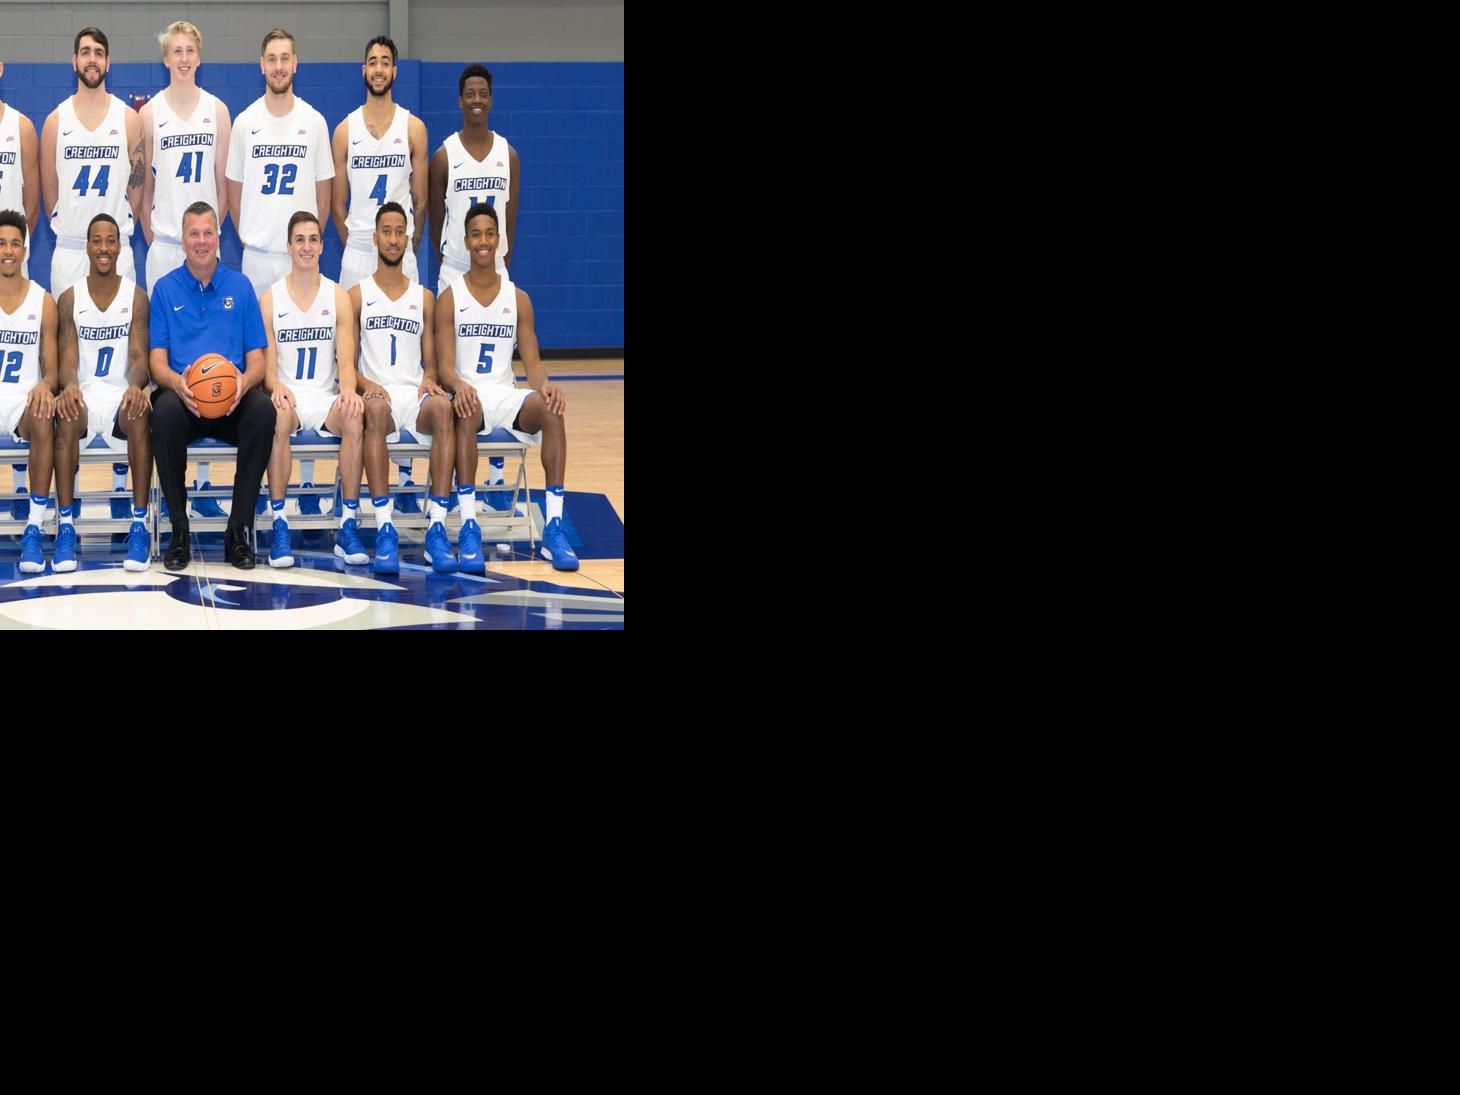 Photos: Meet the 2017-18 Creighton men's basketball team | Men's Basketball | omaha.com